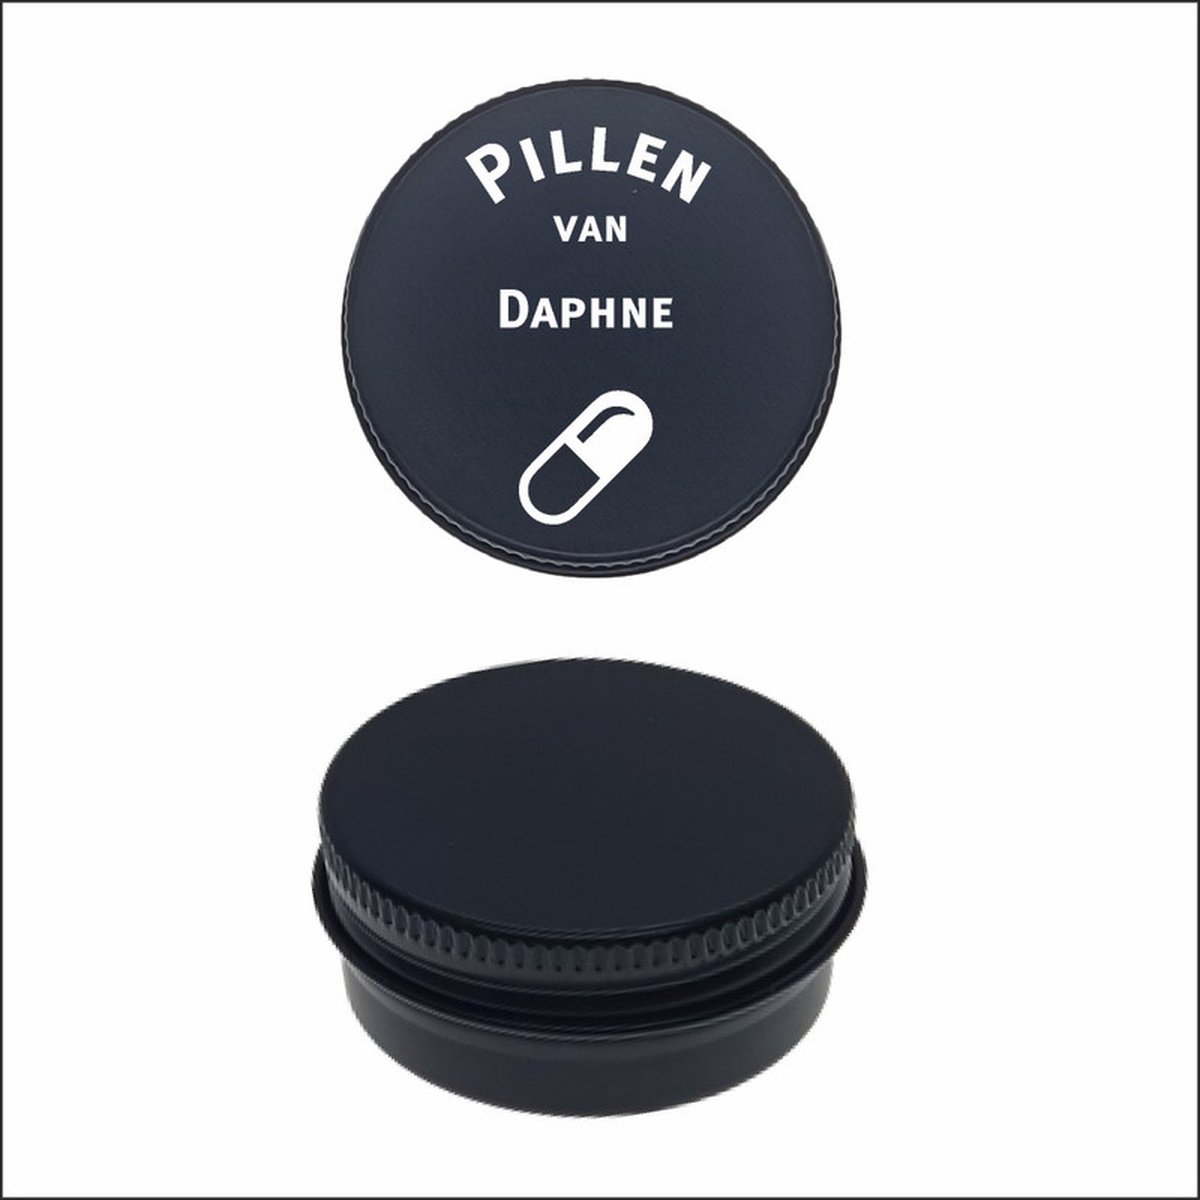 Pillen Blikje Met Naam Gravering - Daphne